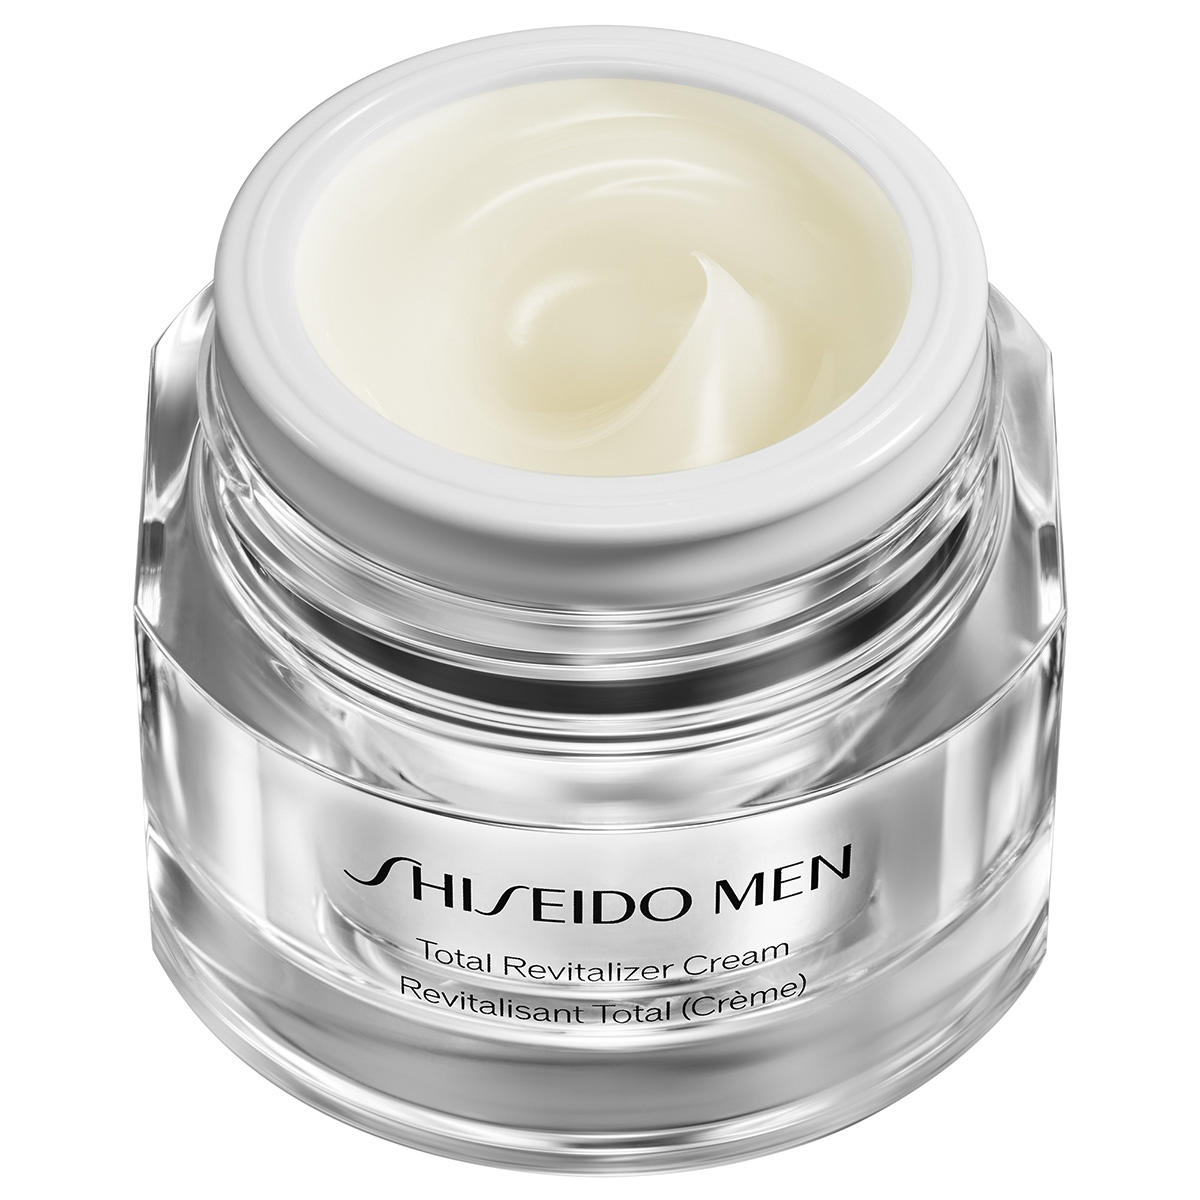 Shiseido Men Total Revitalizer Cream 50 ml - 2